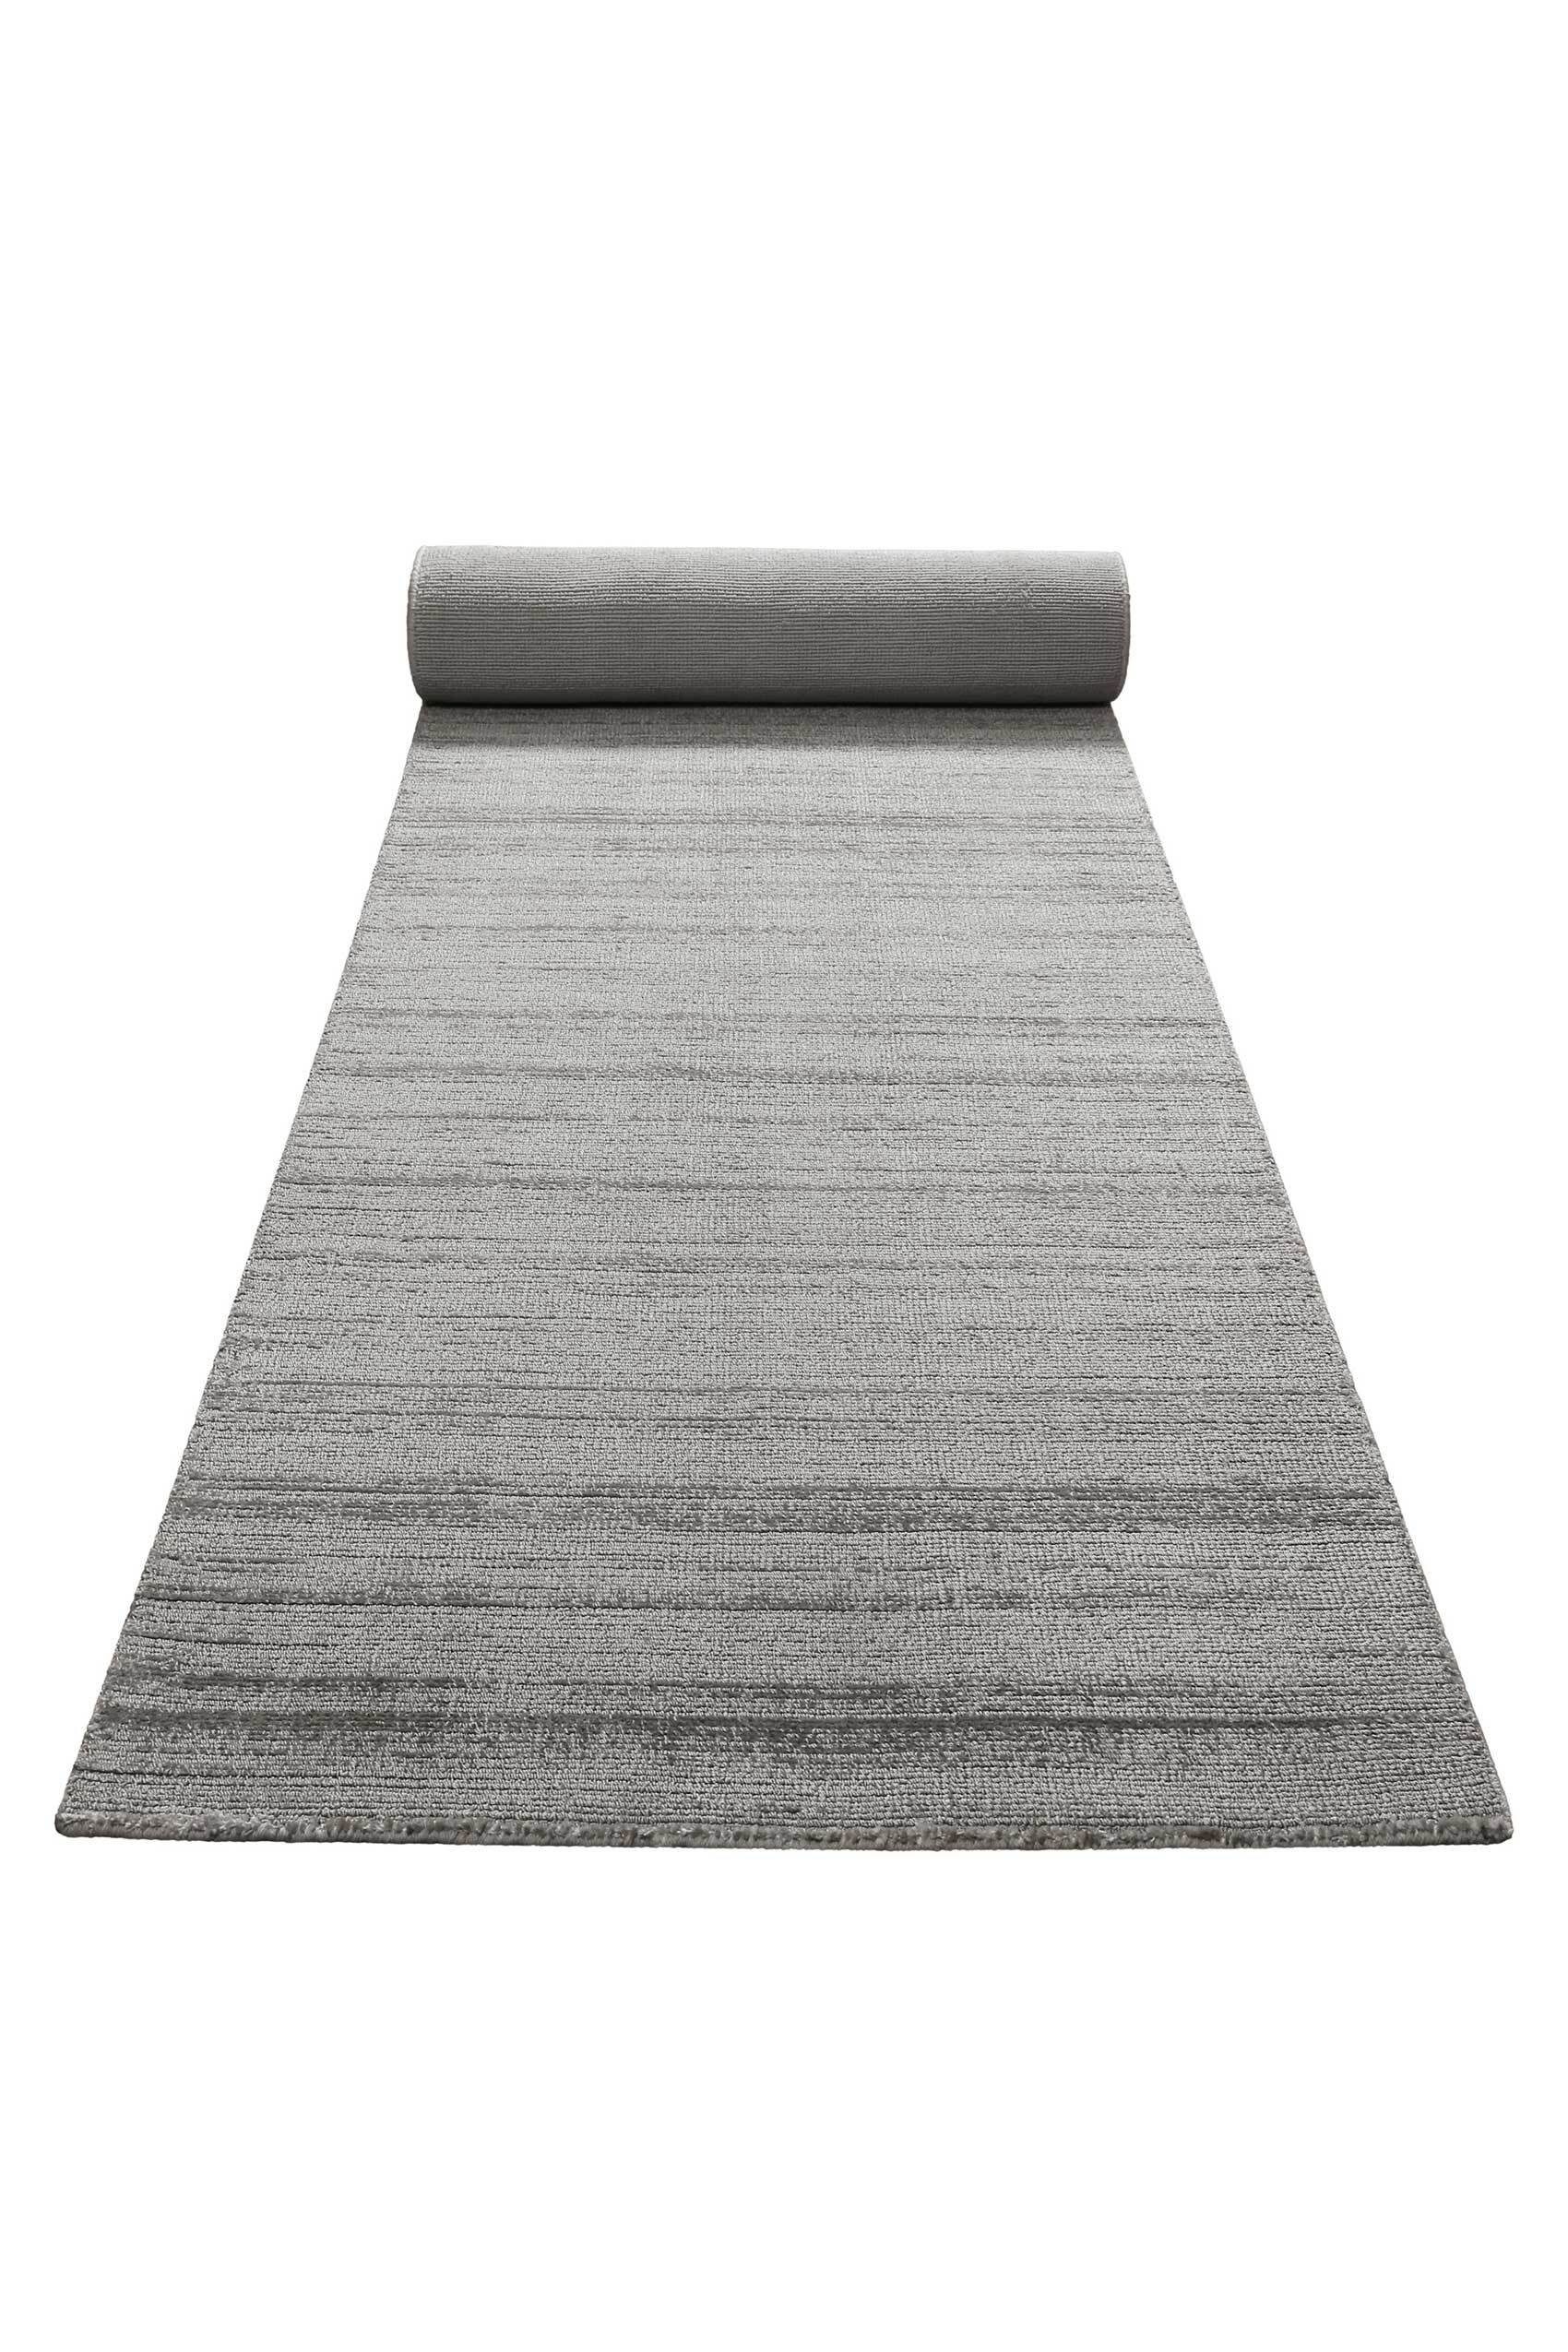 Teppich Miramonti, Homie Living, rechteckig, Höhe: 8 mm, seidig glänzend, einfarbig, modern, zeitlos, Wohn-Schlafzimmer, Flur hellgrau